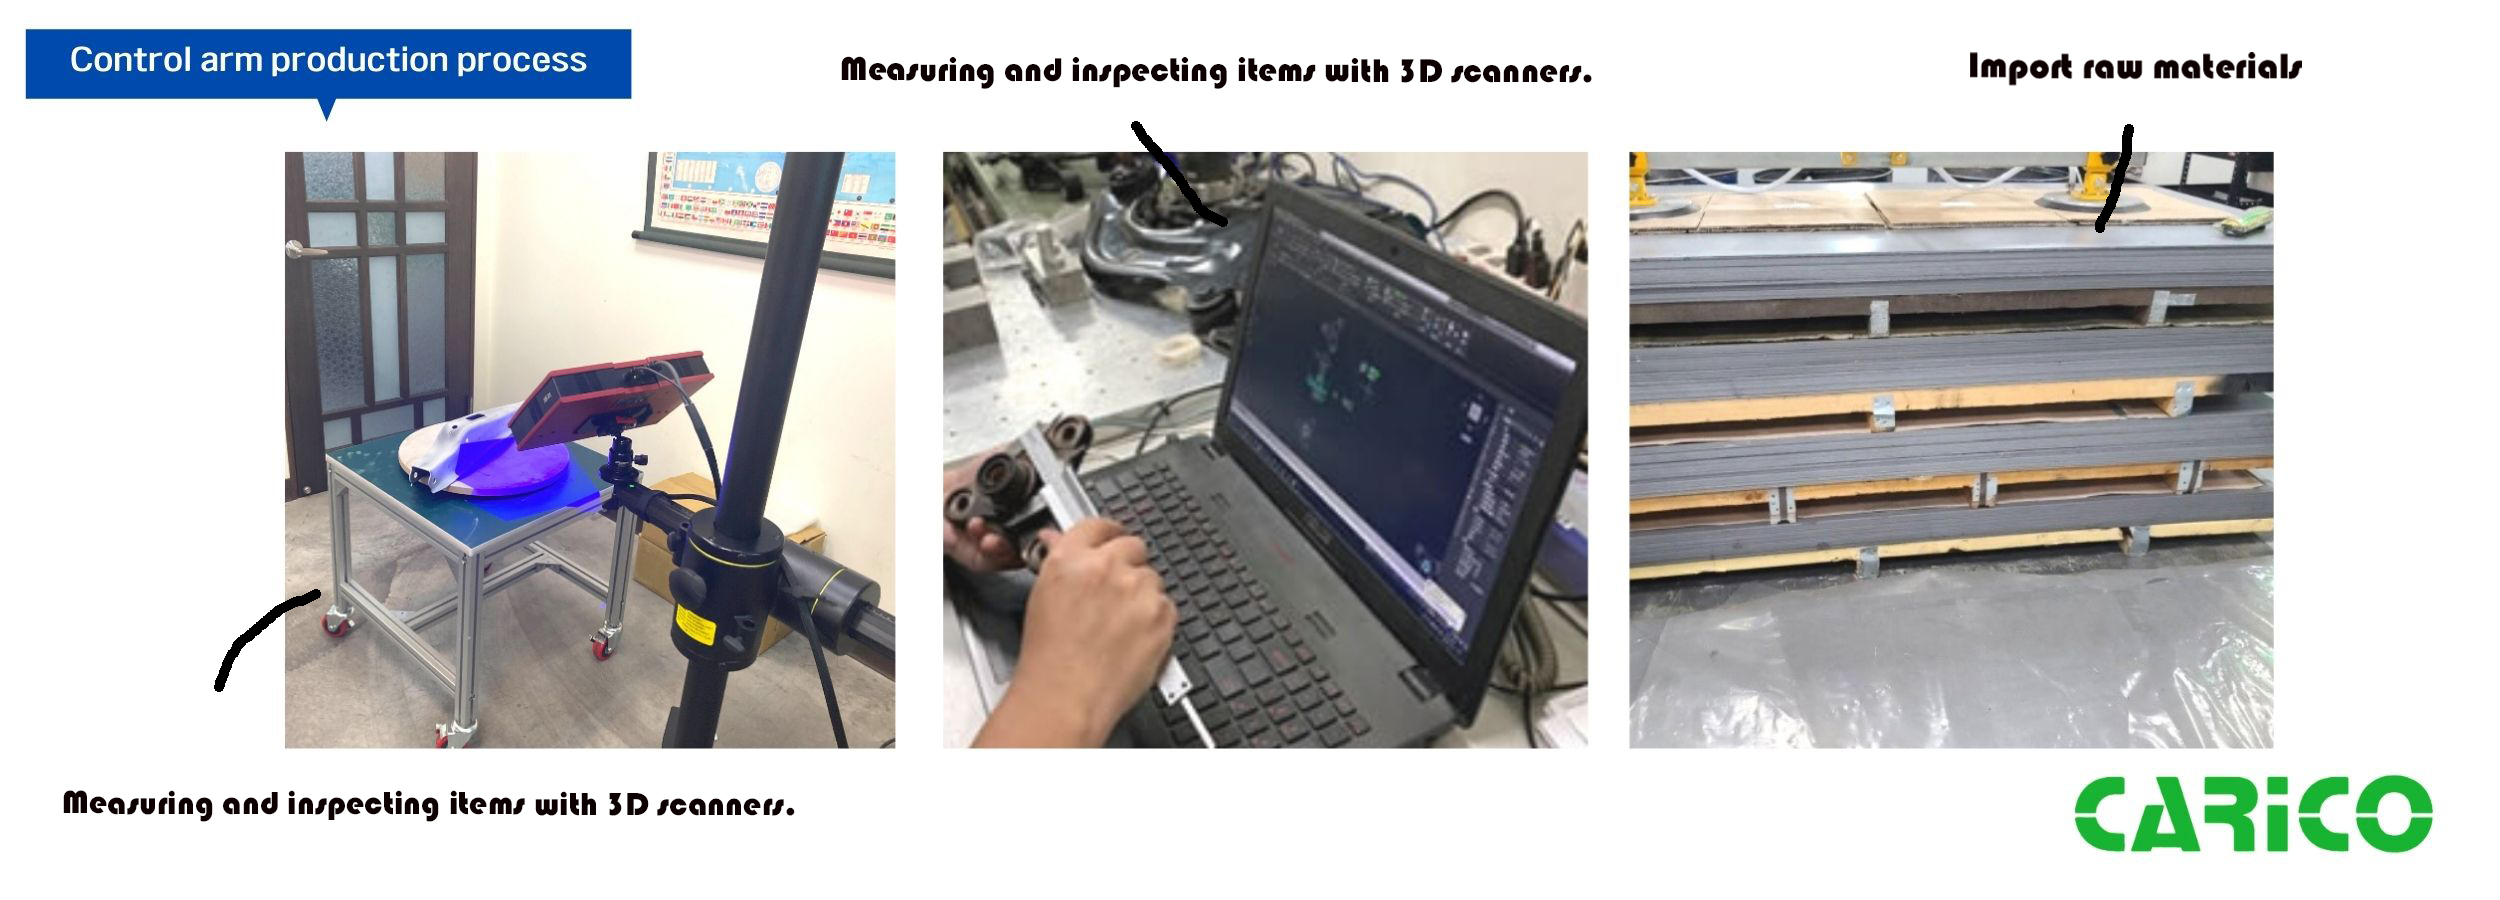 medir y inspeccionar piezas con escáner de 3D